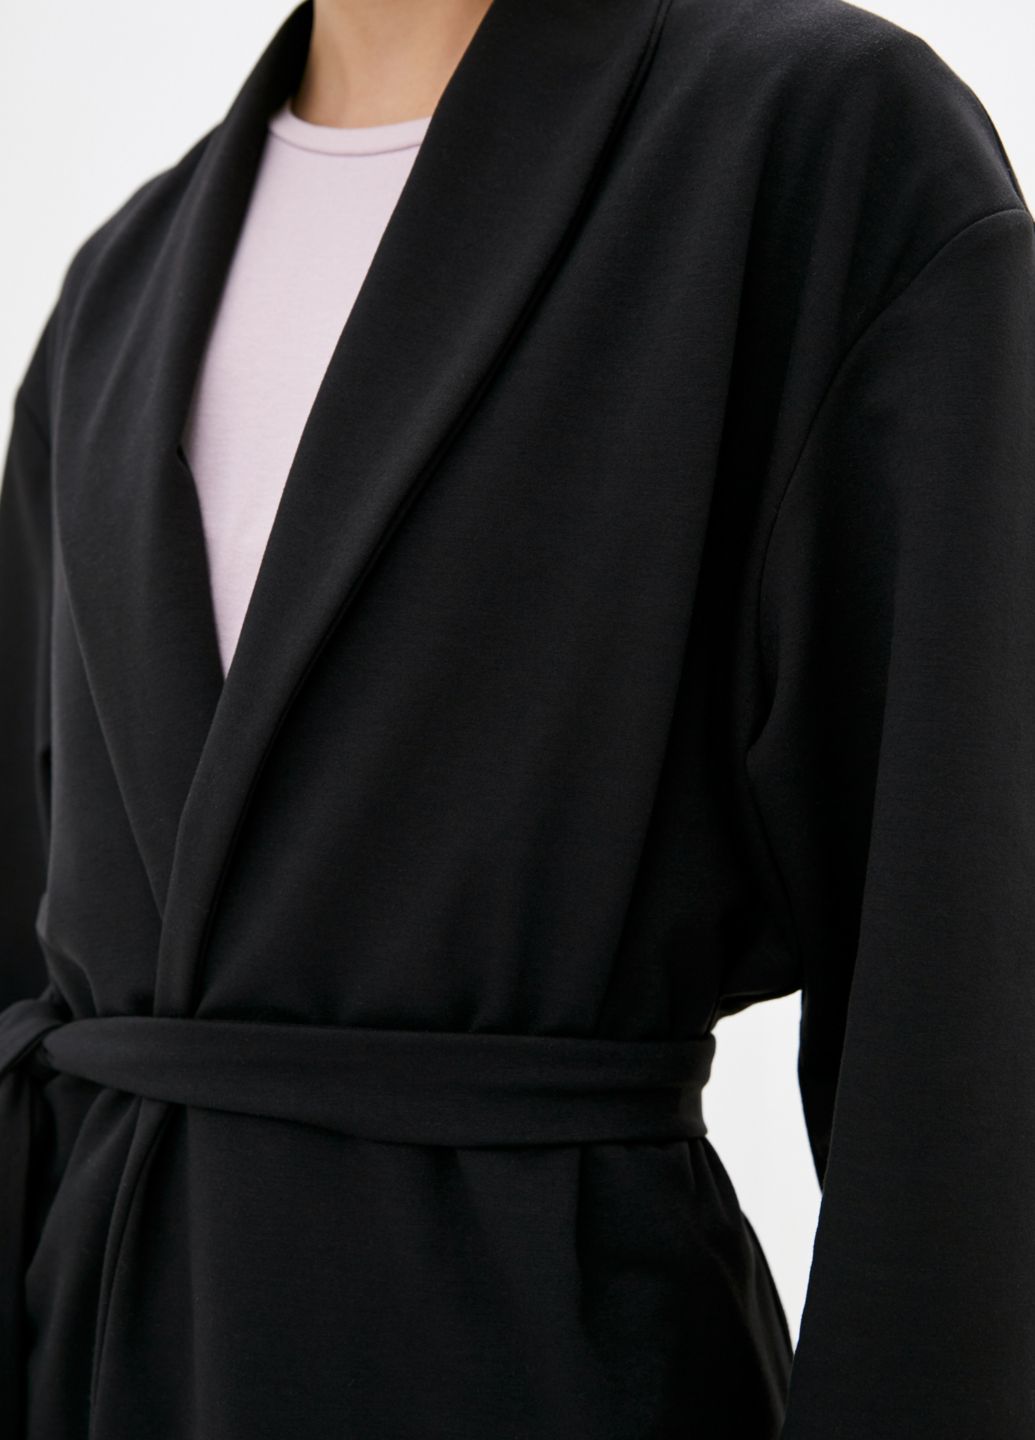 Купить Черный трикотажный женский жакет с поясом Merlini Монца 120000002, размер 46-48 в интернет-магазине